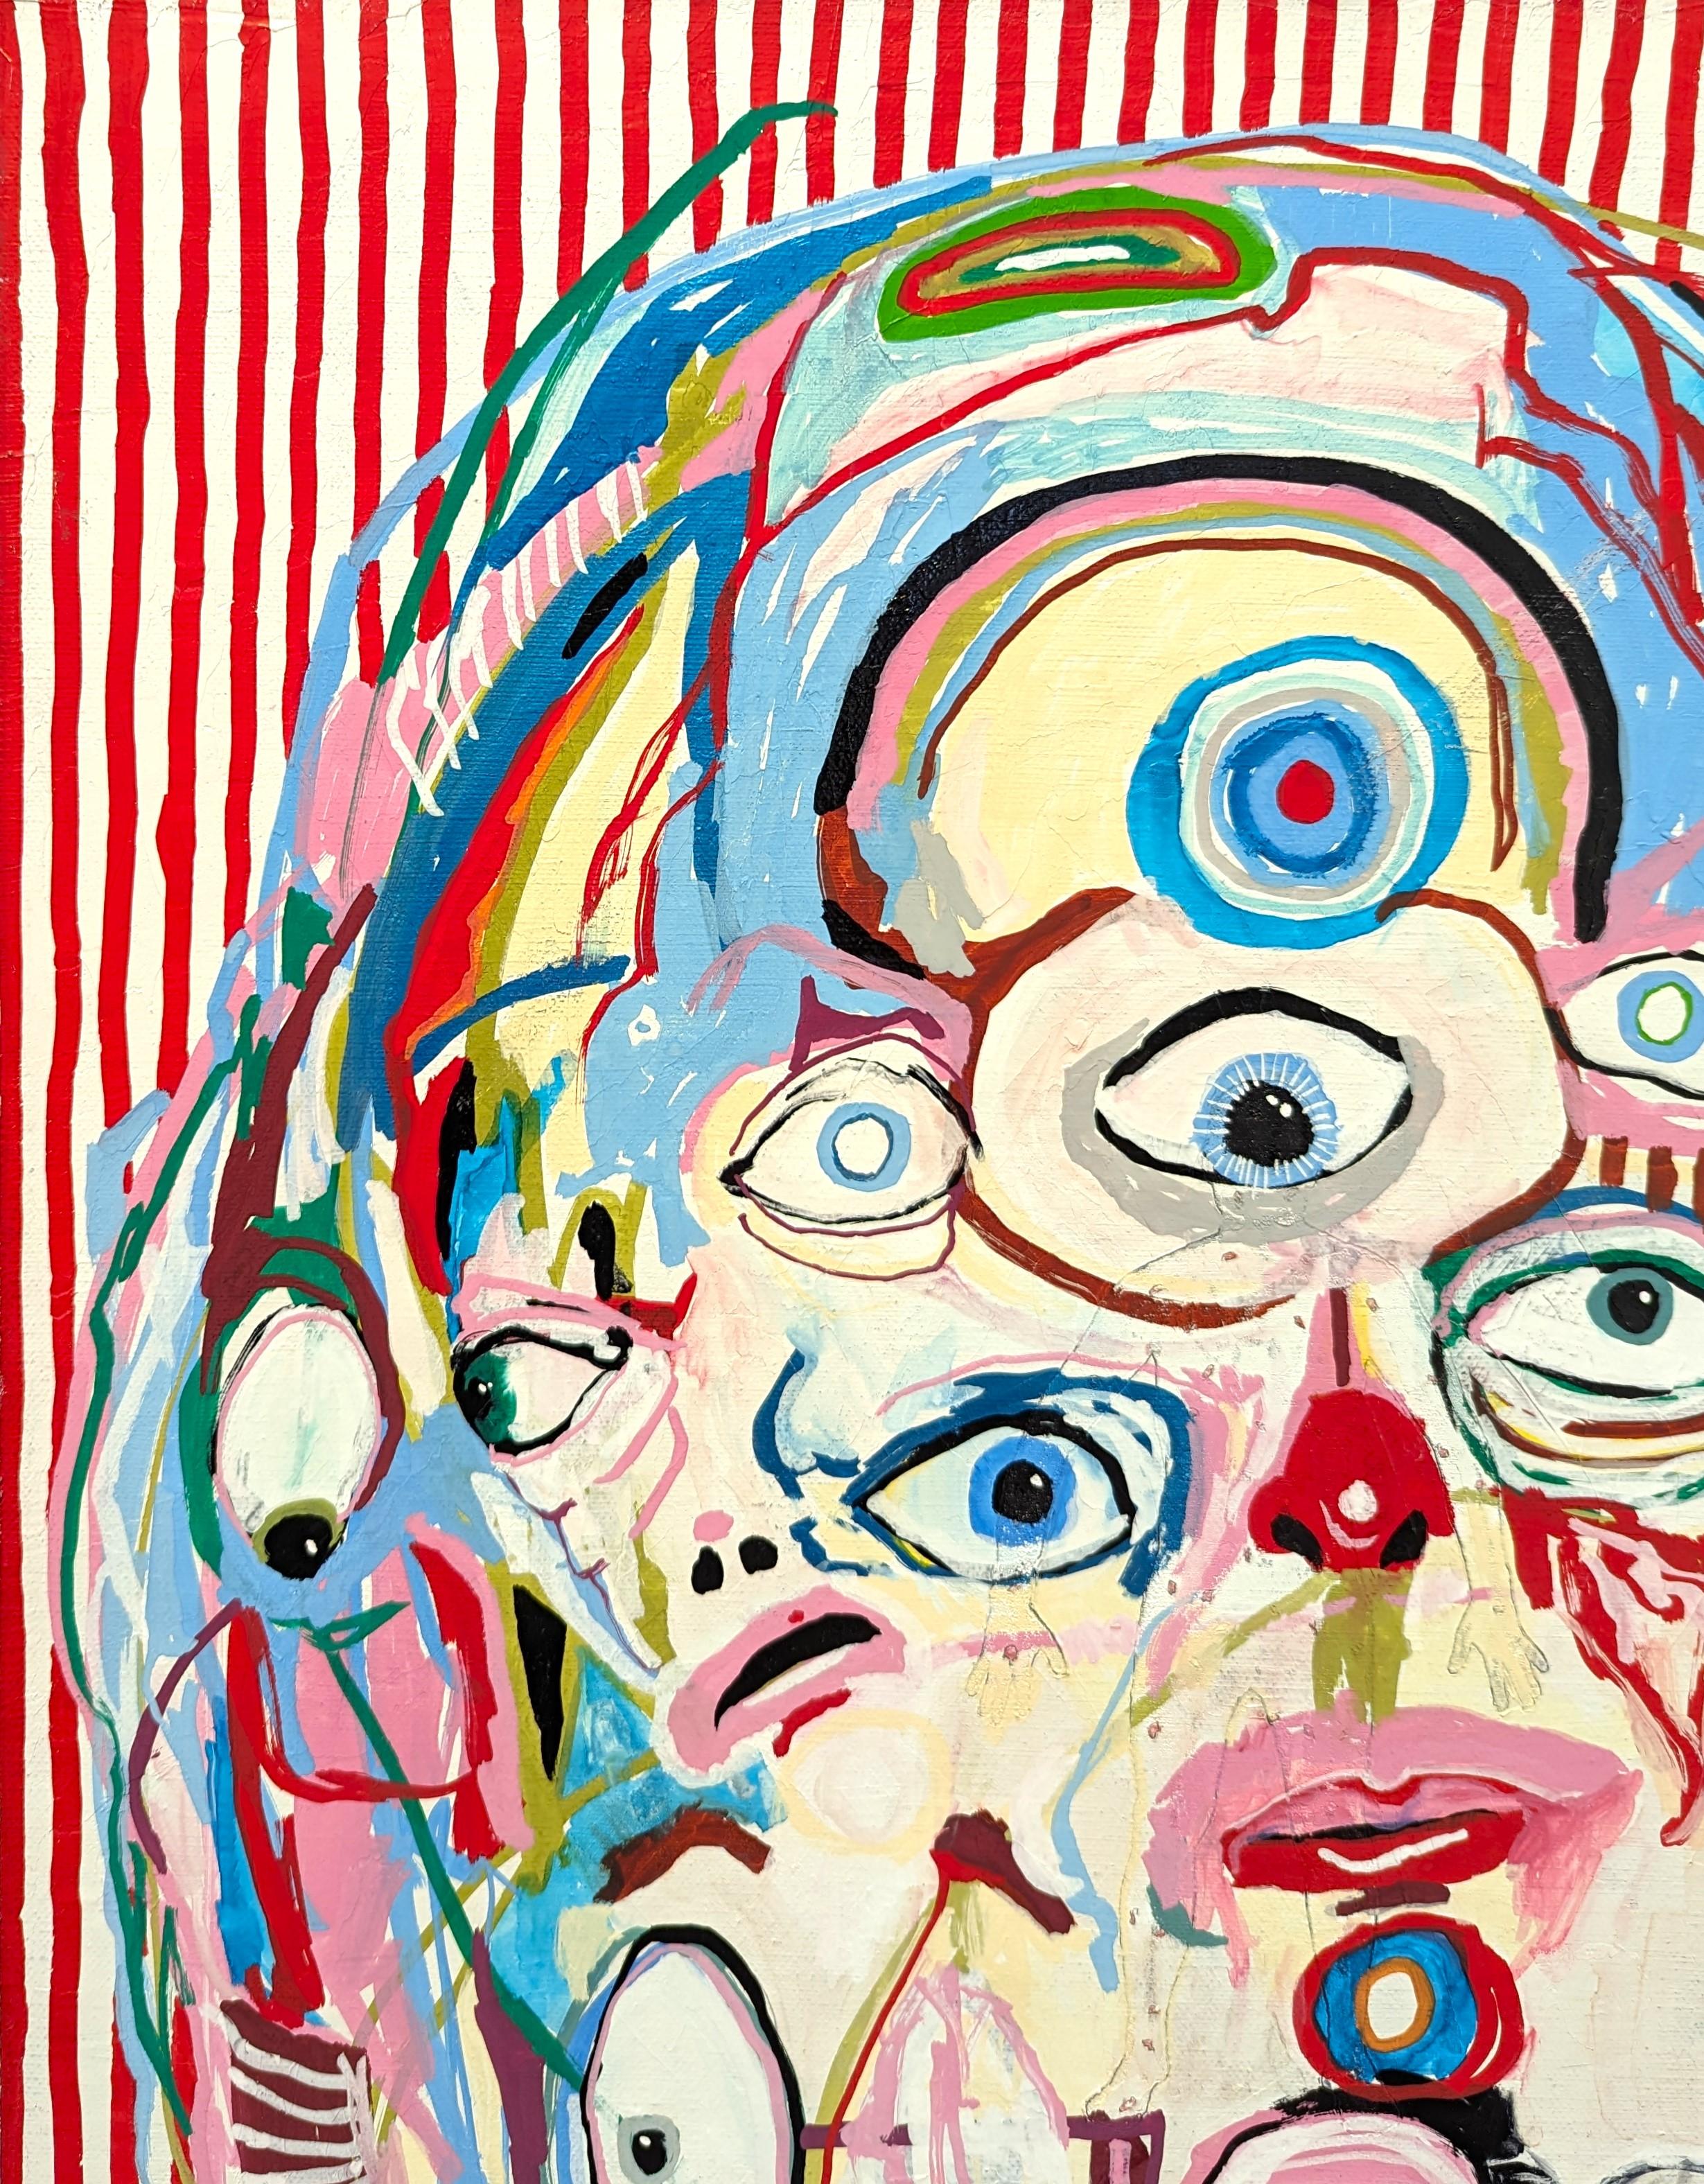 Gelbäugiges, nach Wild riechendes, farbenfrohes zeitgenössisches surrealistisches Gemälde (Zeitgenössisch), Painting, von Alex Paulus